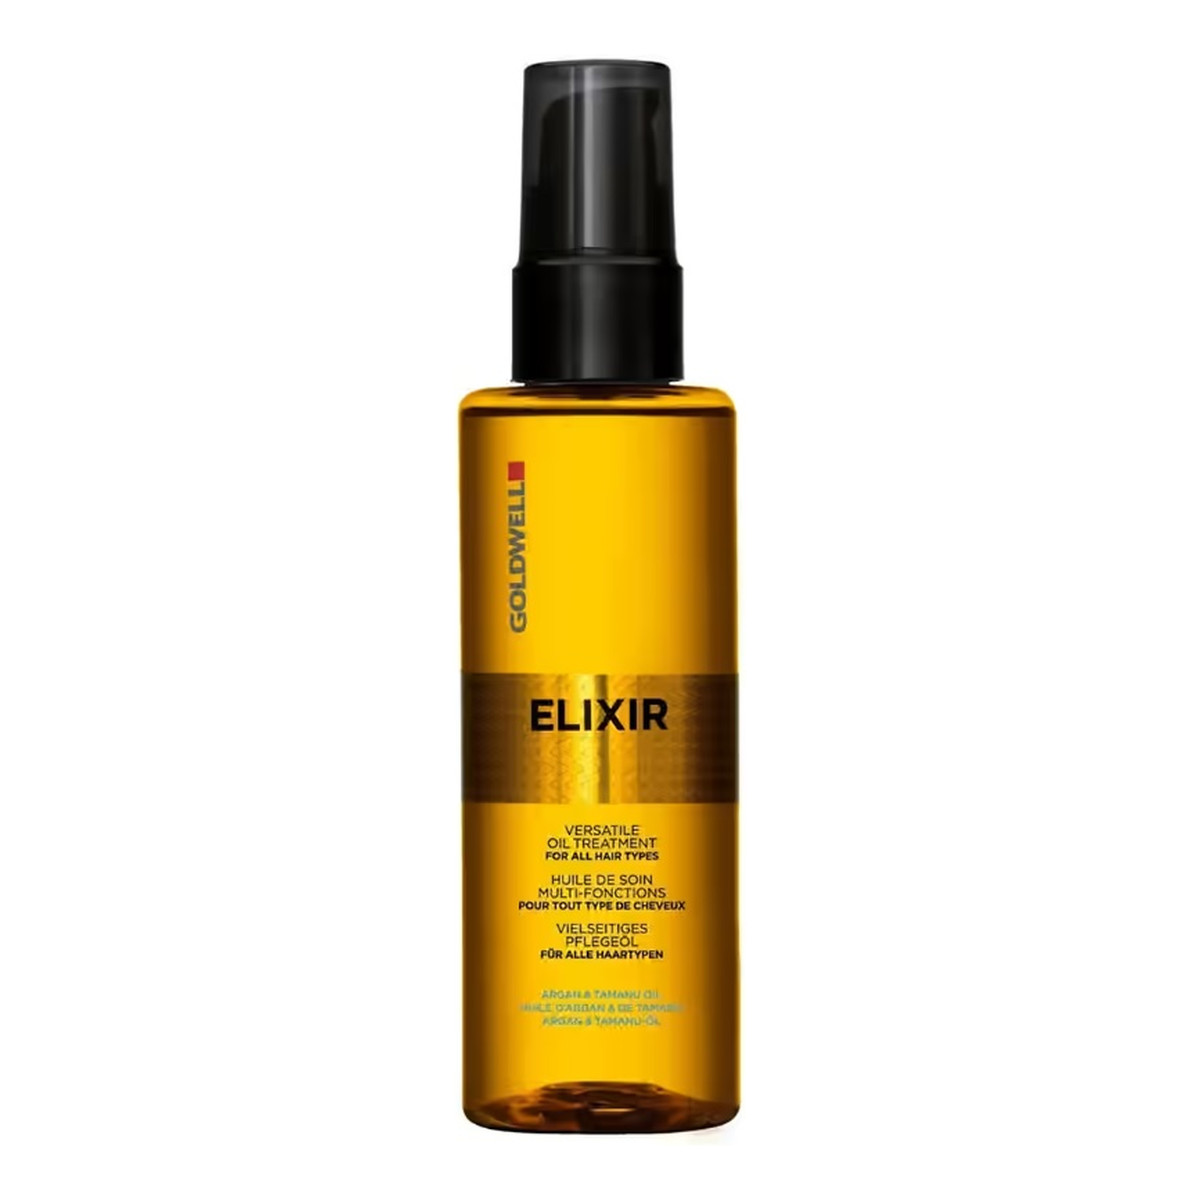 Goldwell Elixir Versatile Oil Treatment olejek pielęgnacyjny do włosów 100ml